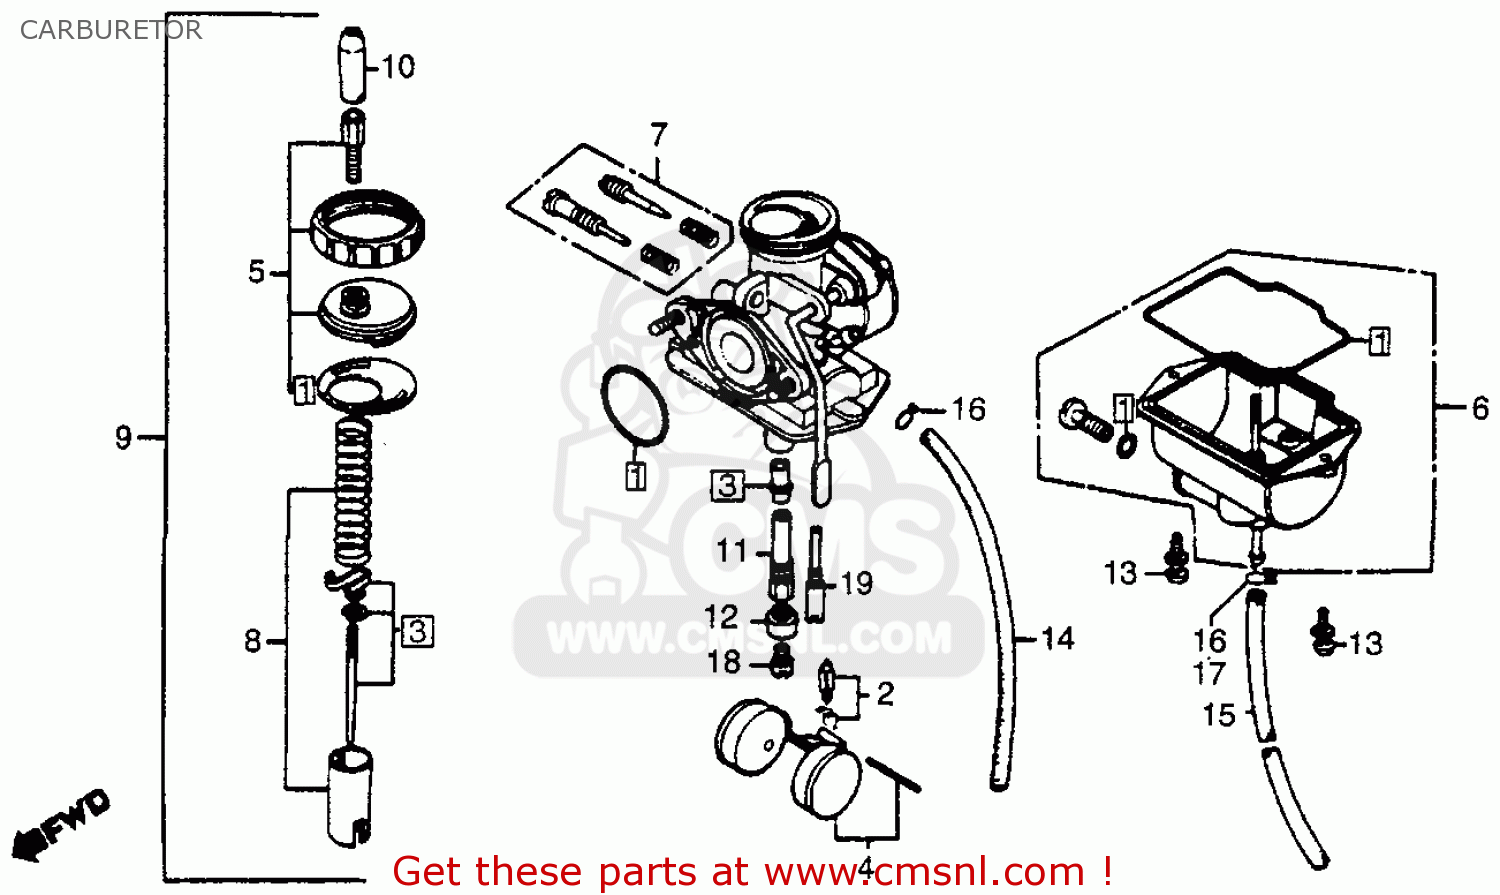 2003 Honda xr80 carburetor diagram #1